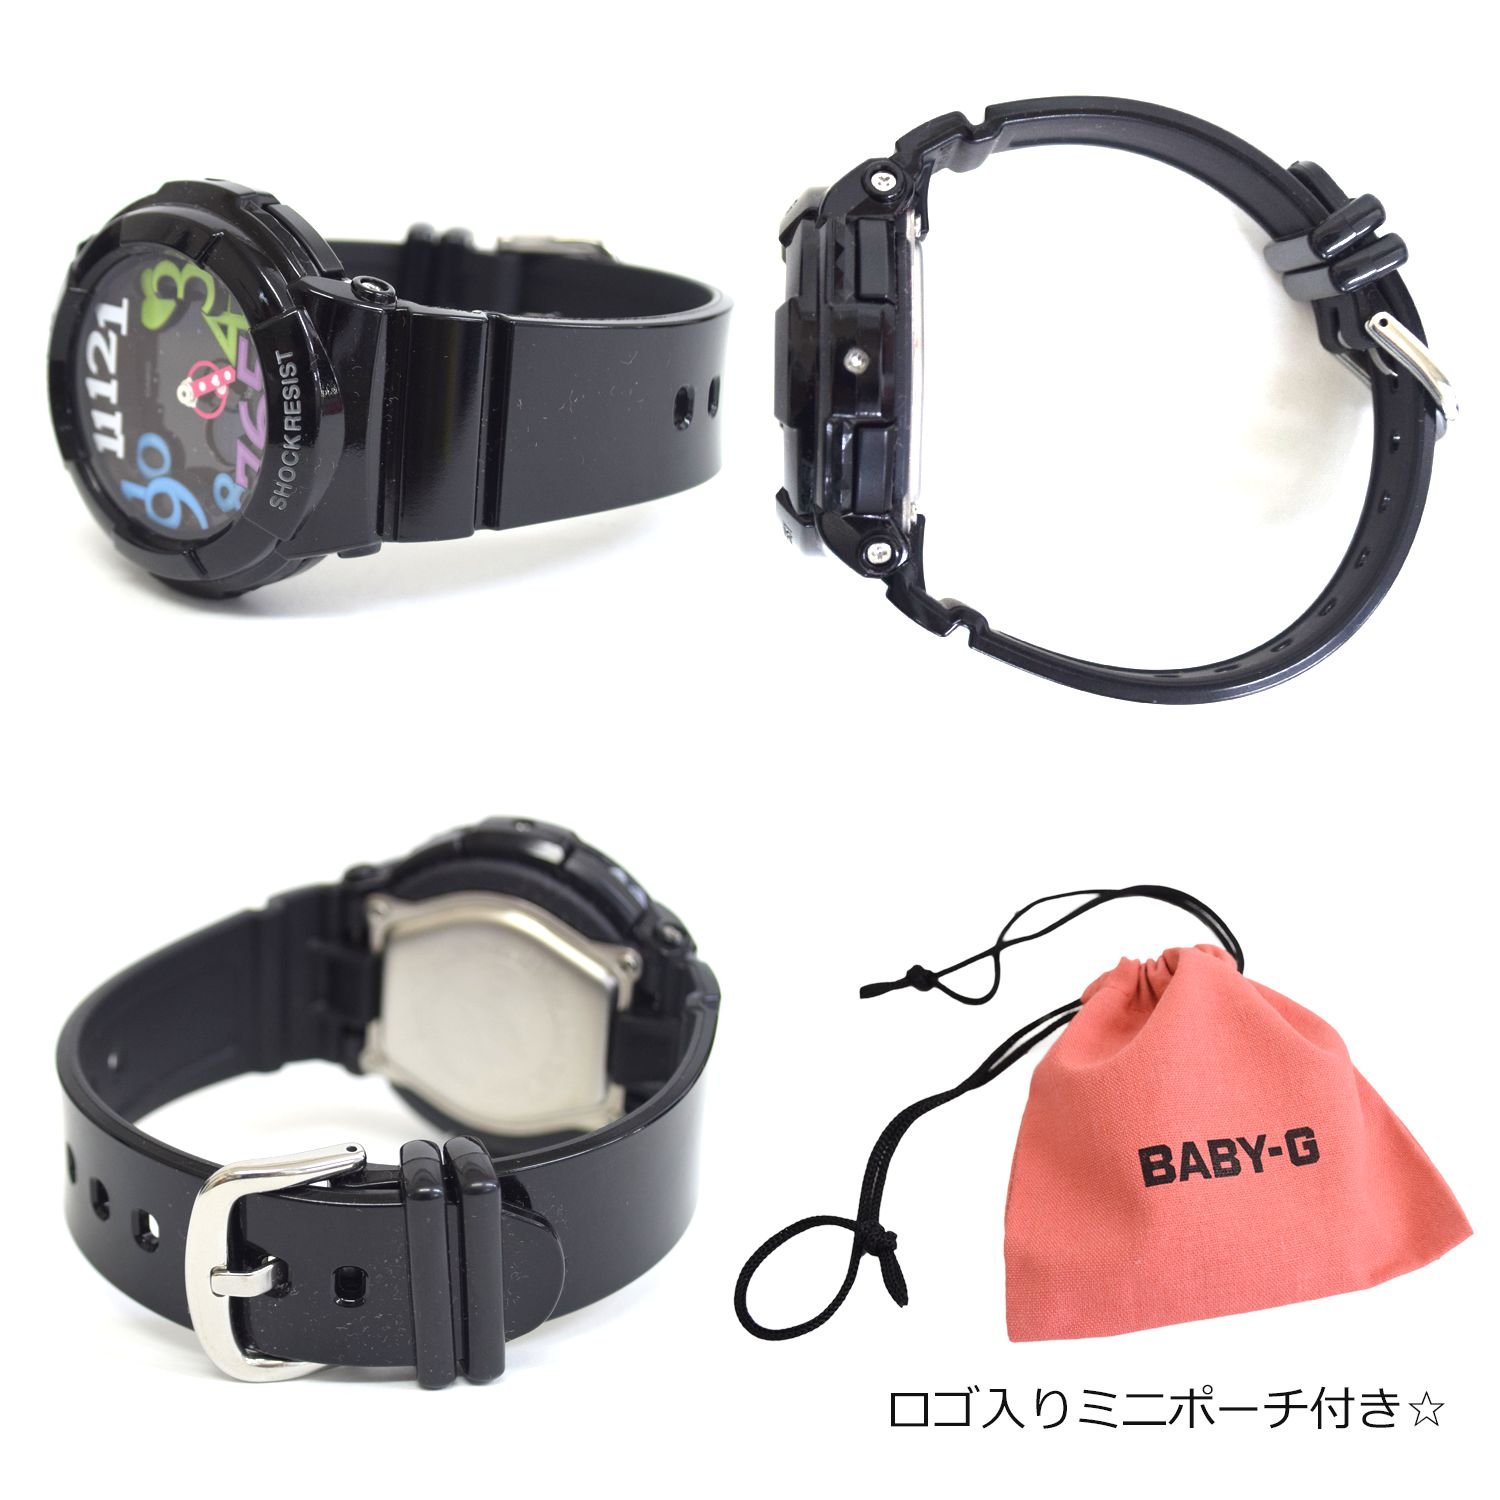 CASIO Baby-G Baby-G Women's Watch BGA-131-1B2JF Japan Import